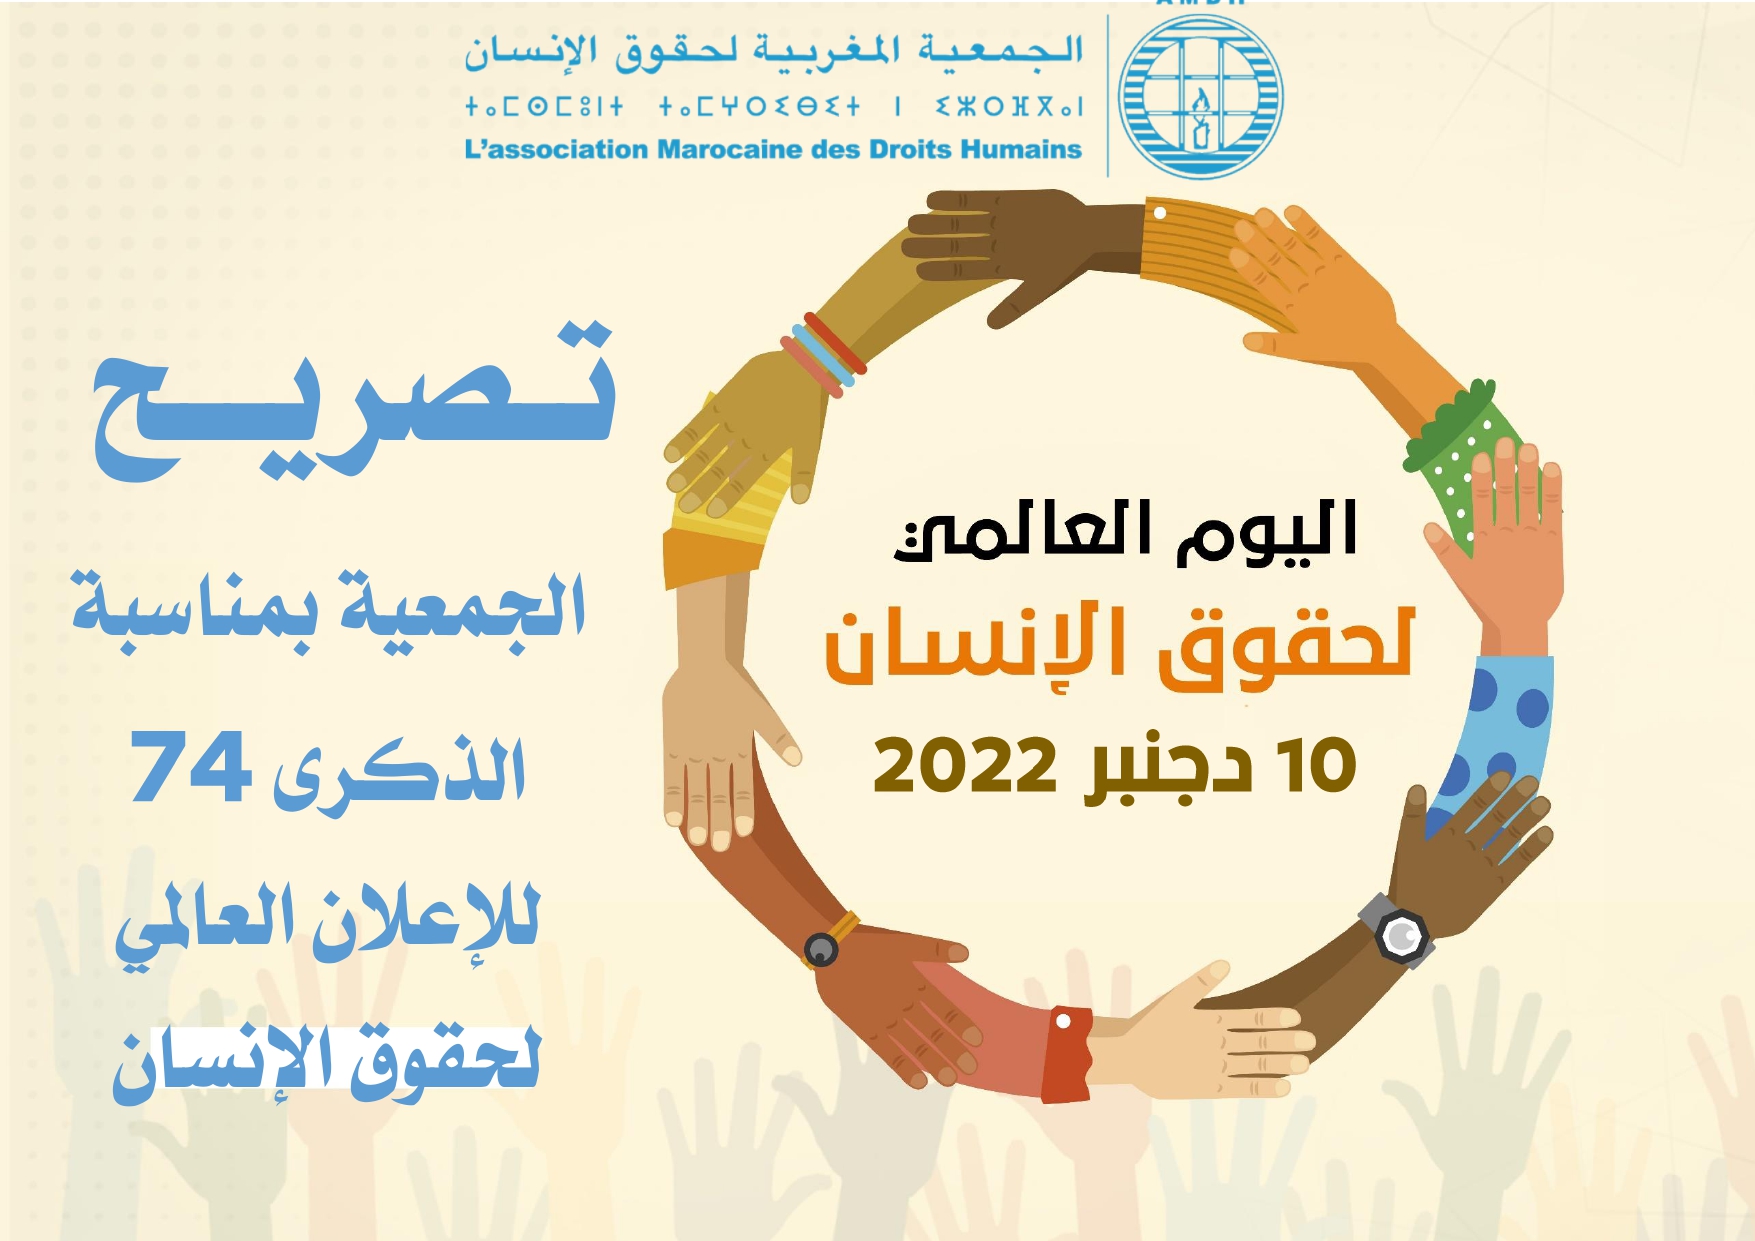 تــــــــــــصريــــــــــــــح الجمعيــــة المغربيــــة لحقــــــوق الإنســــــان بمناسبة الذكرى 74 للإعلان العالمي لحقوق الإنسان 10 دجنبر 2022